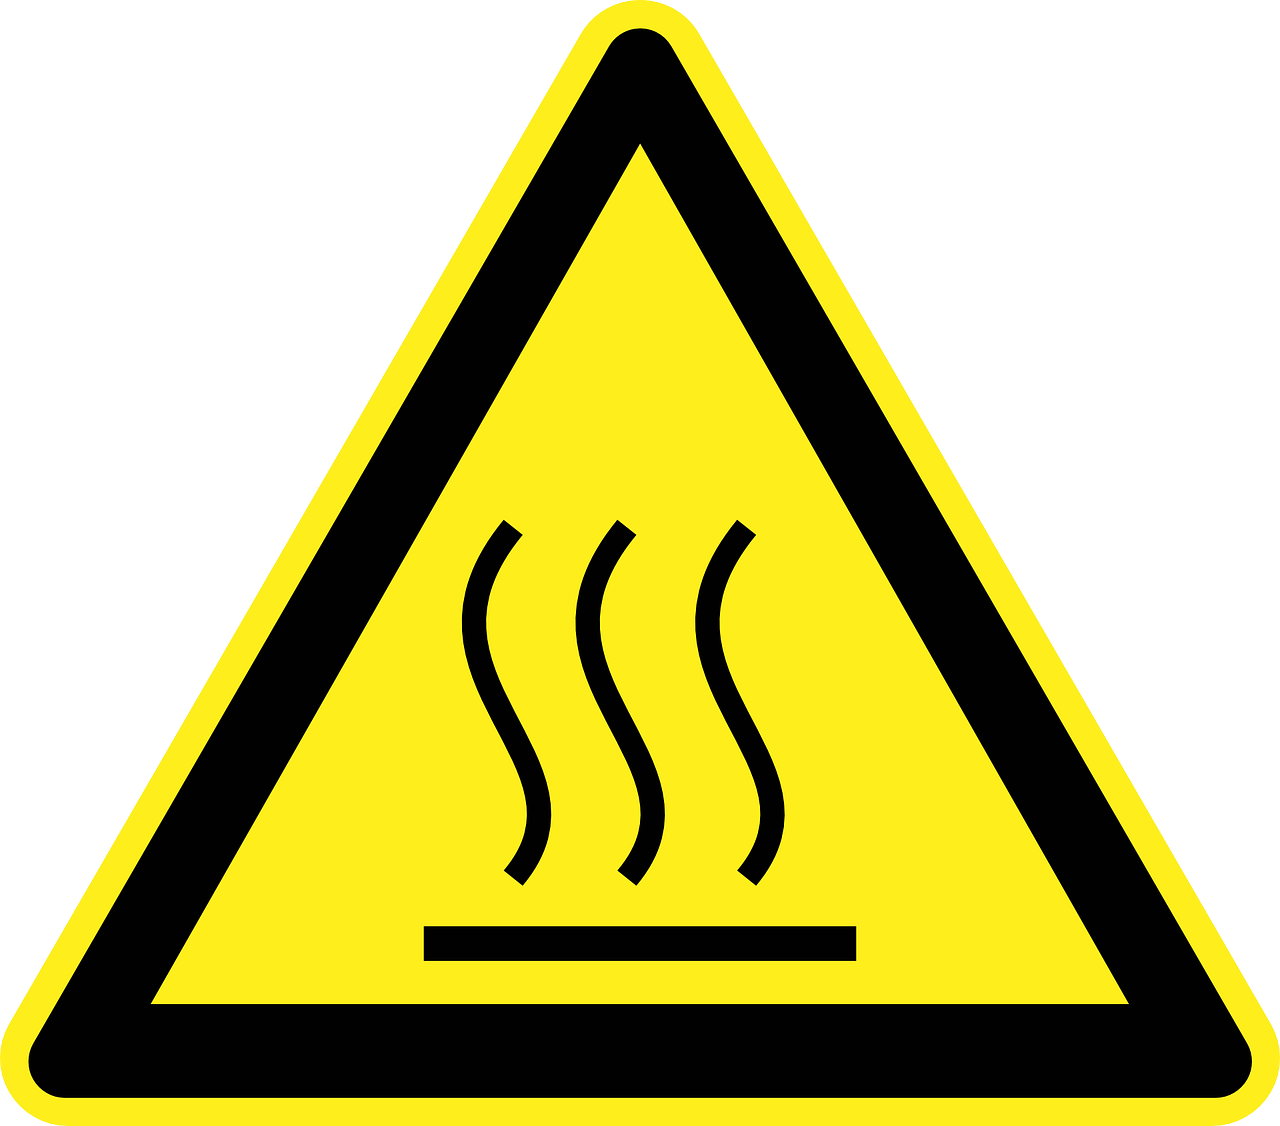 Hot Surface Warning Sign PNG